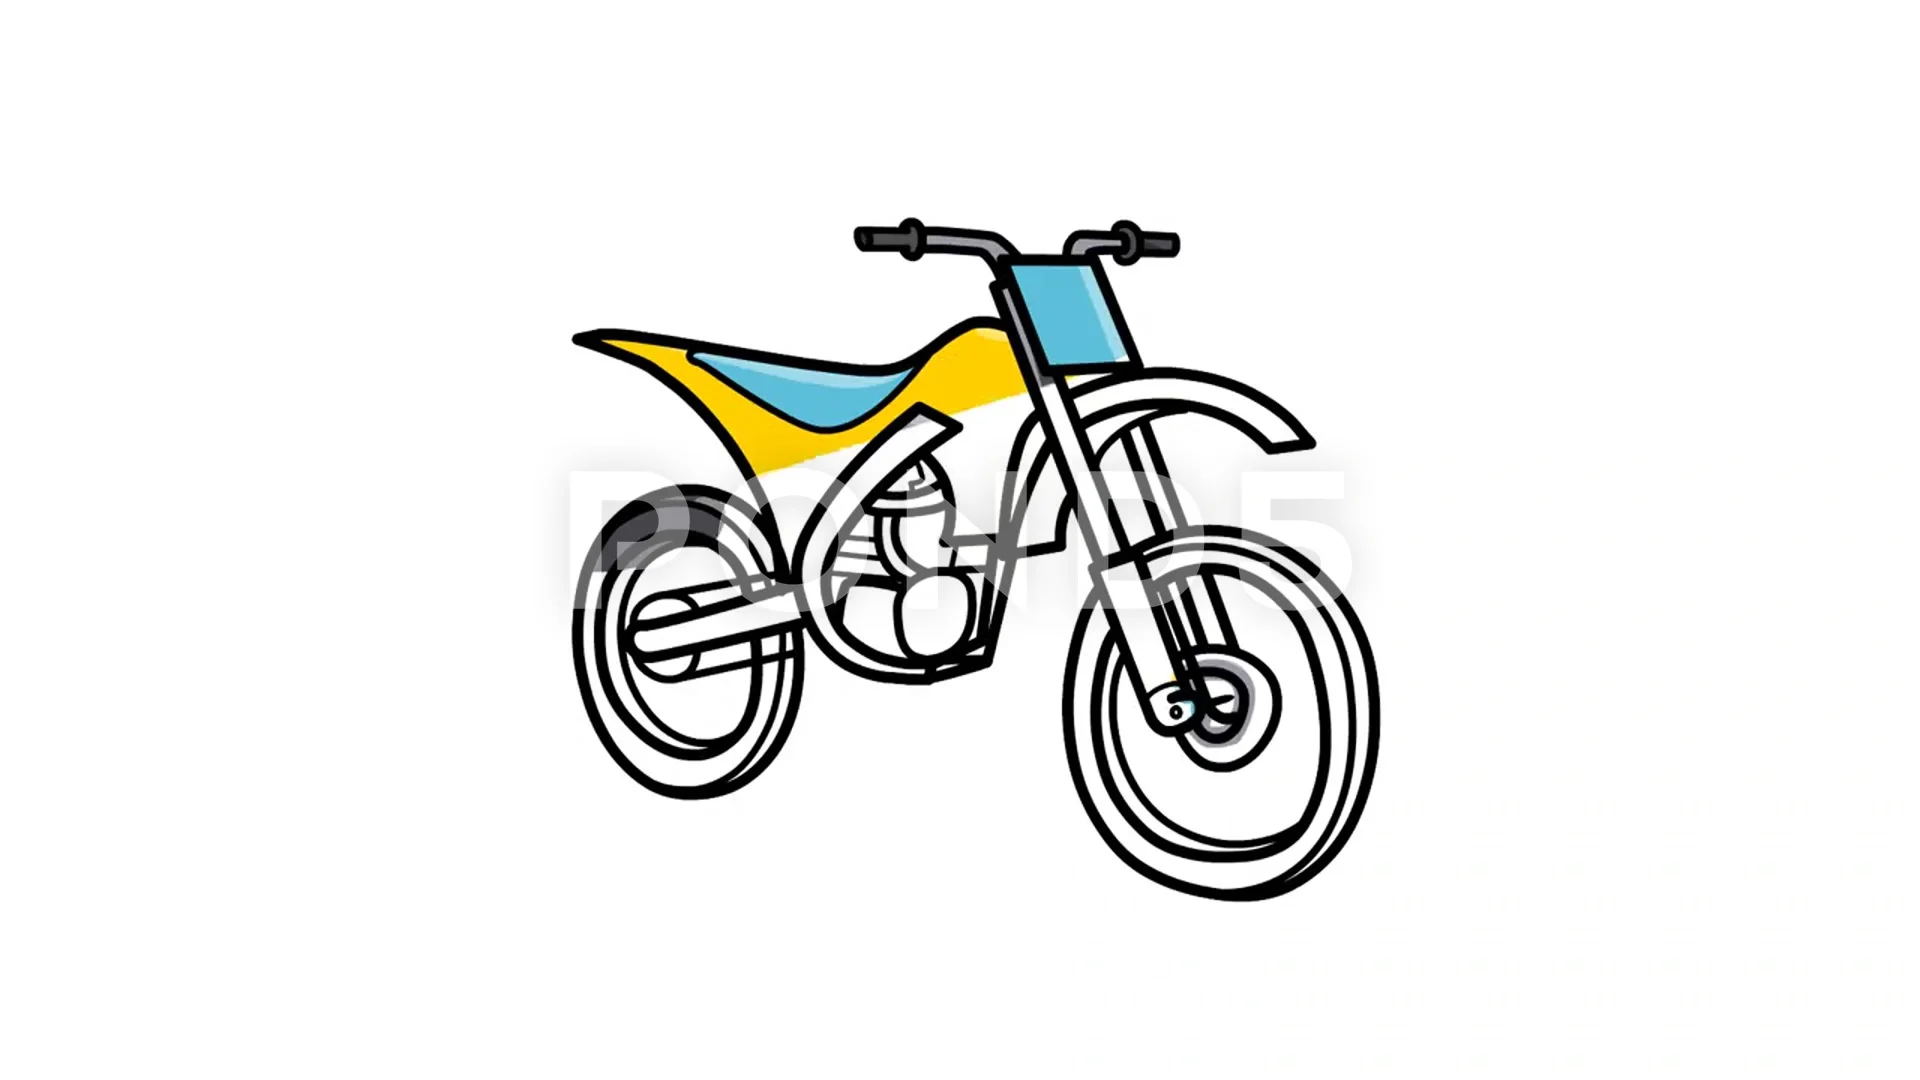 Motor bike drawing on Craiyon